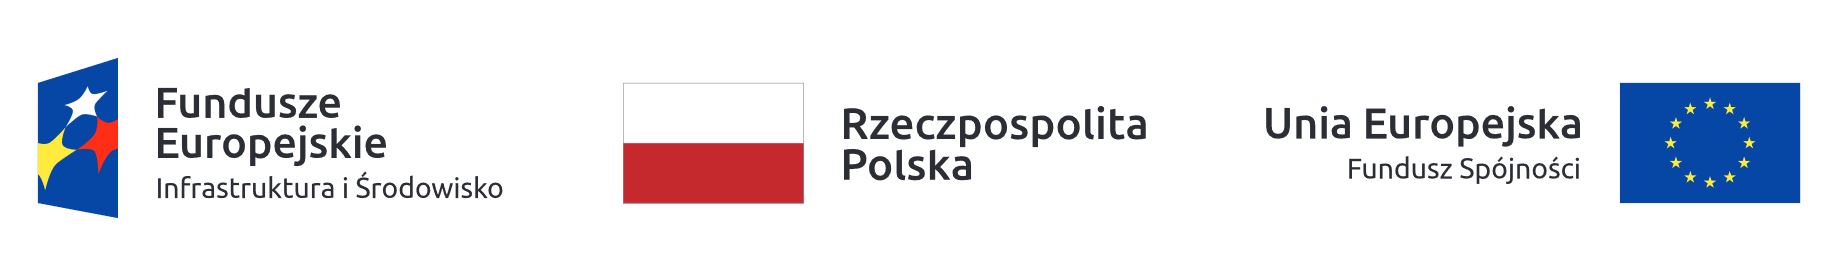 logotyp flaga unii europejskiej, flaga rzeczpospolitej polskiej, flaga funduszu spójności